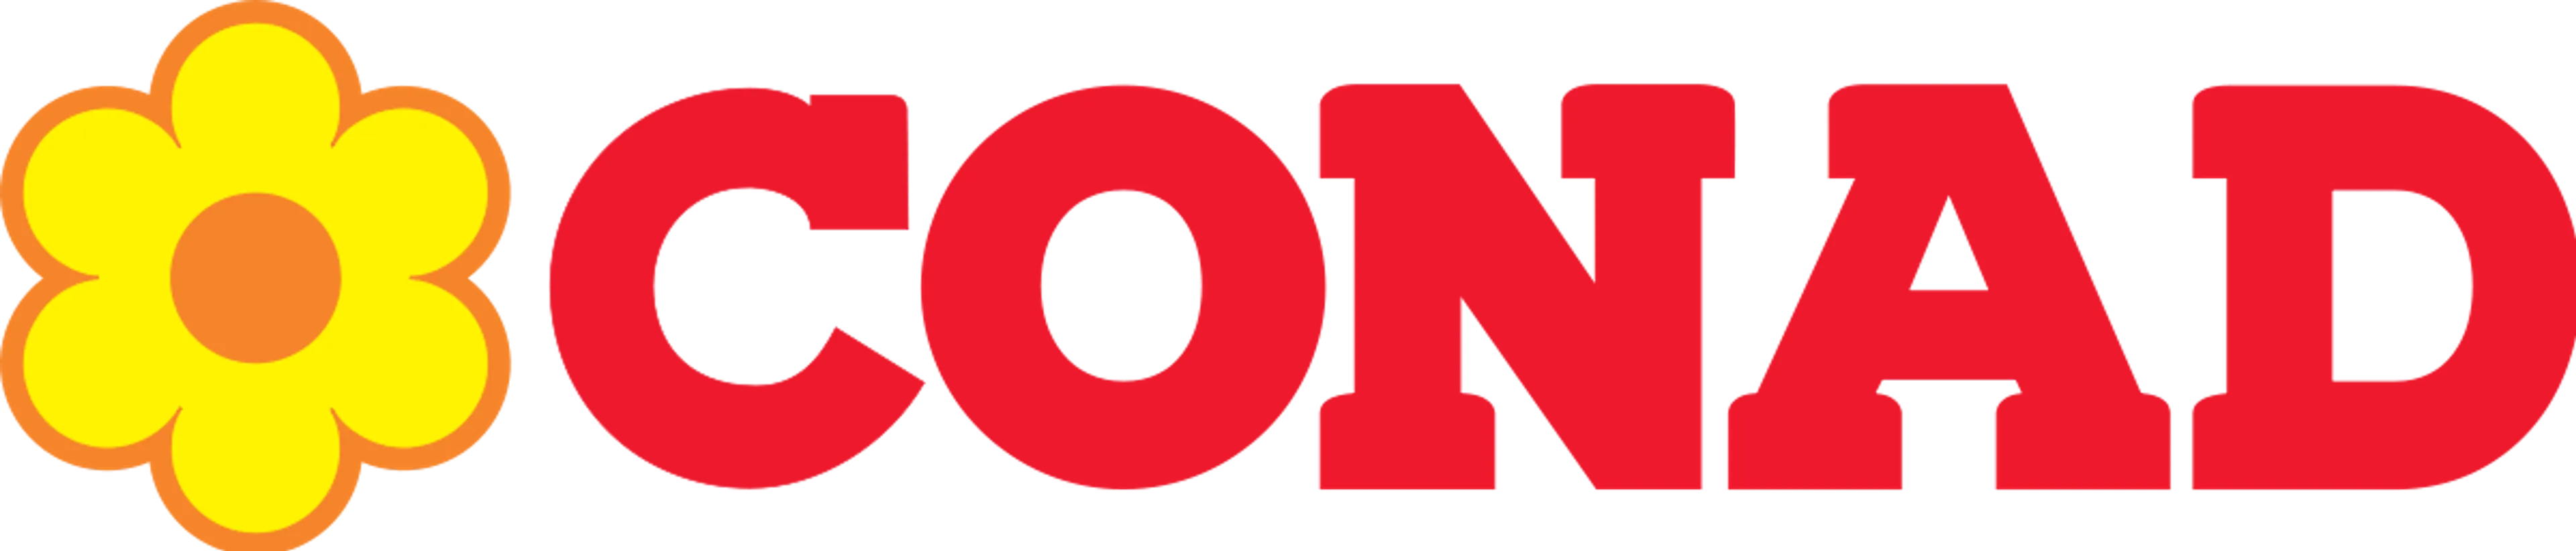 CONAD logo